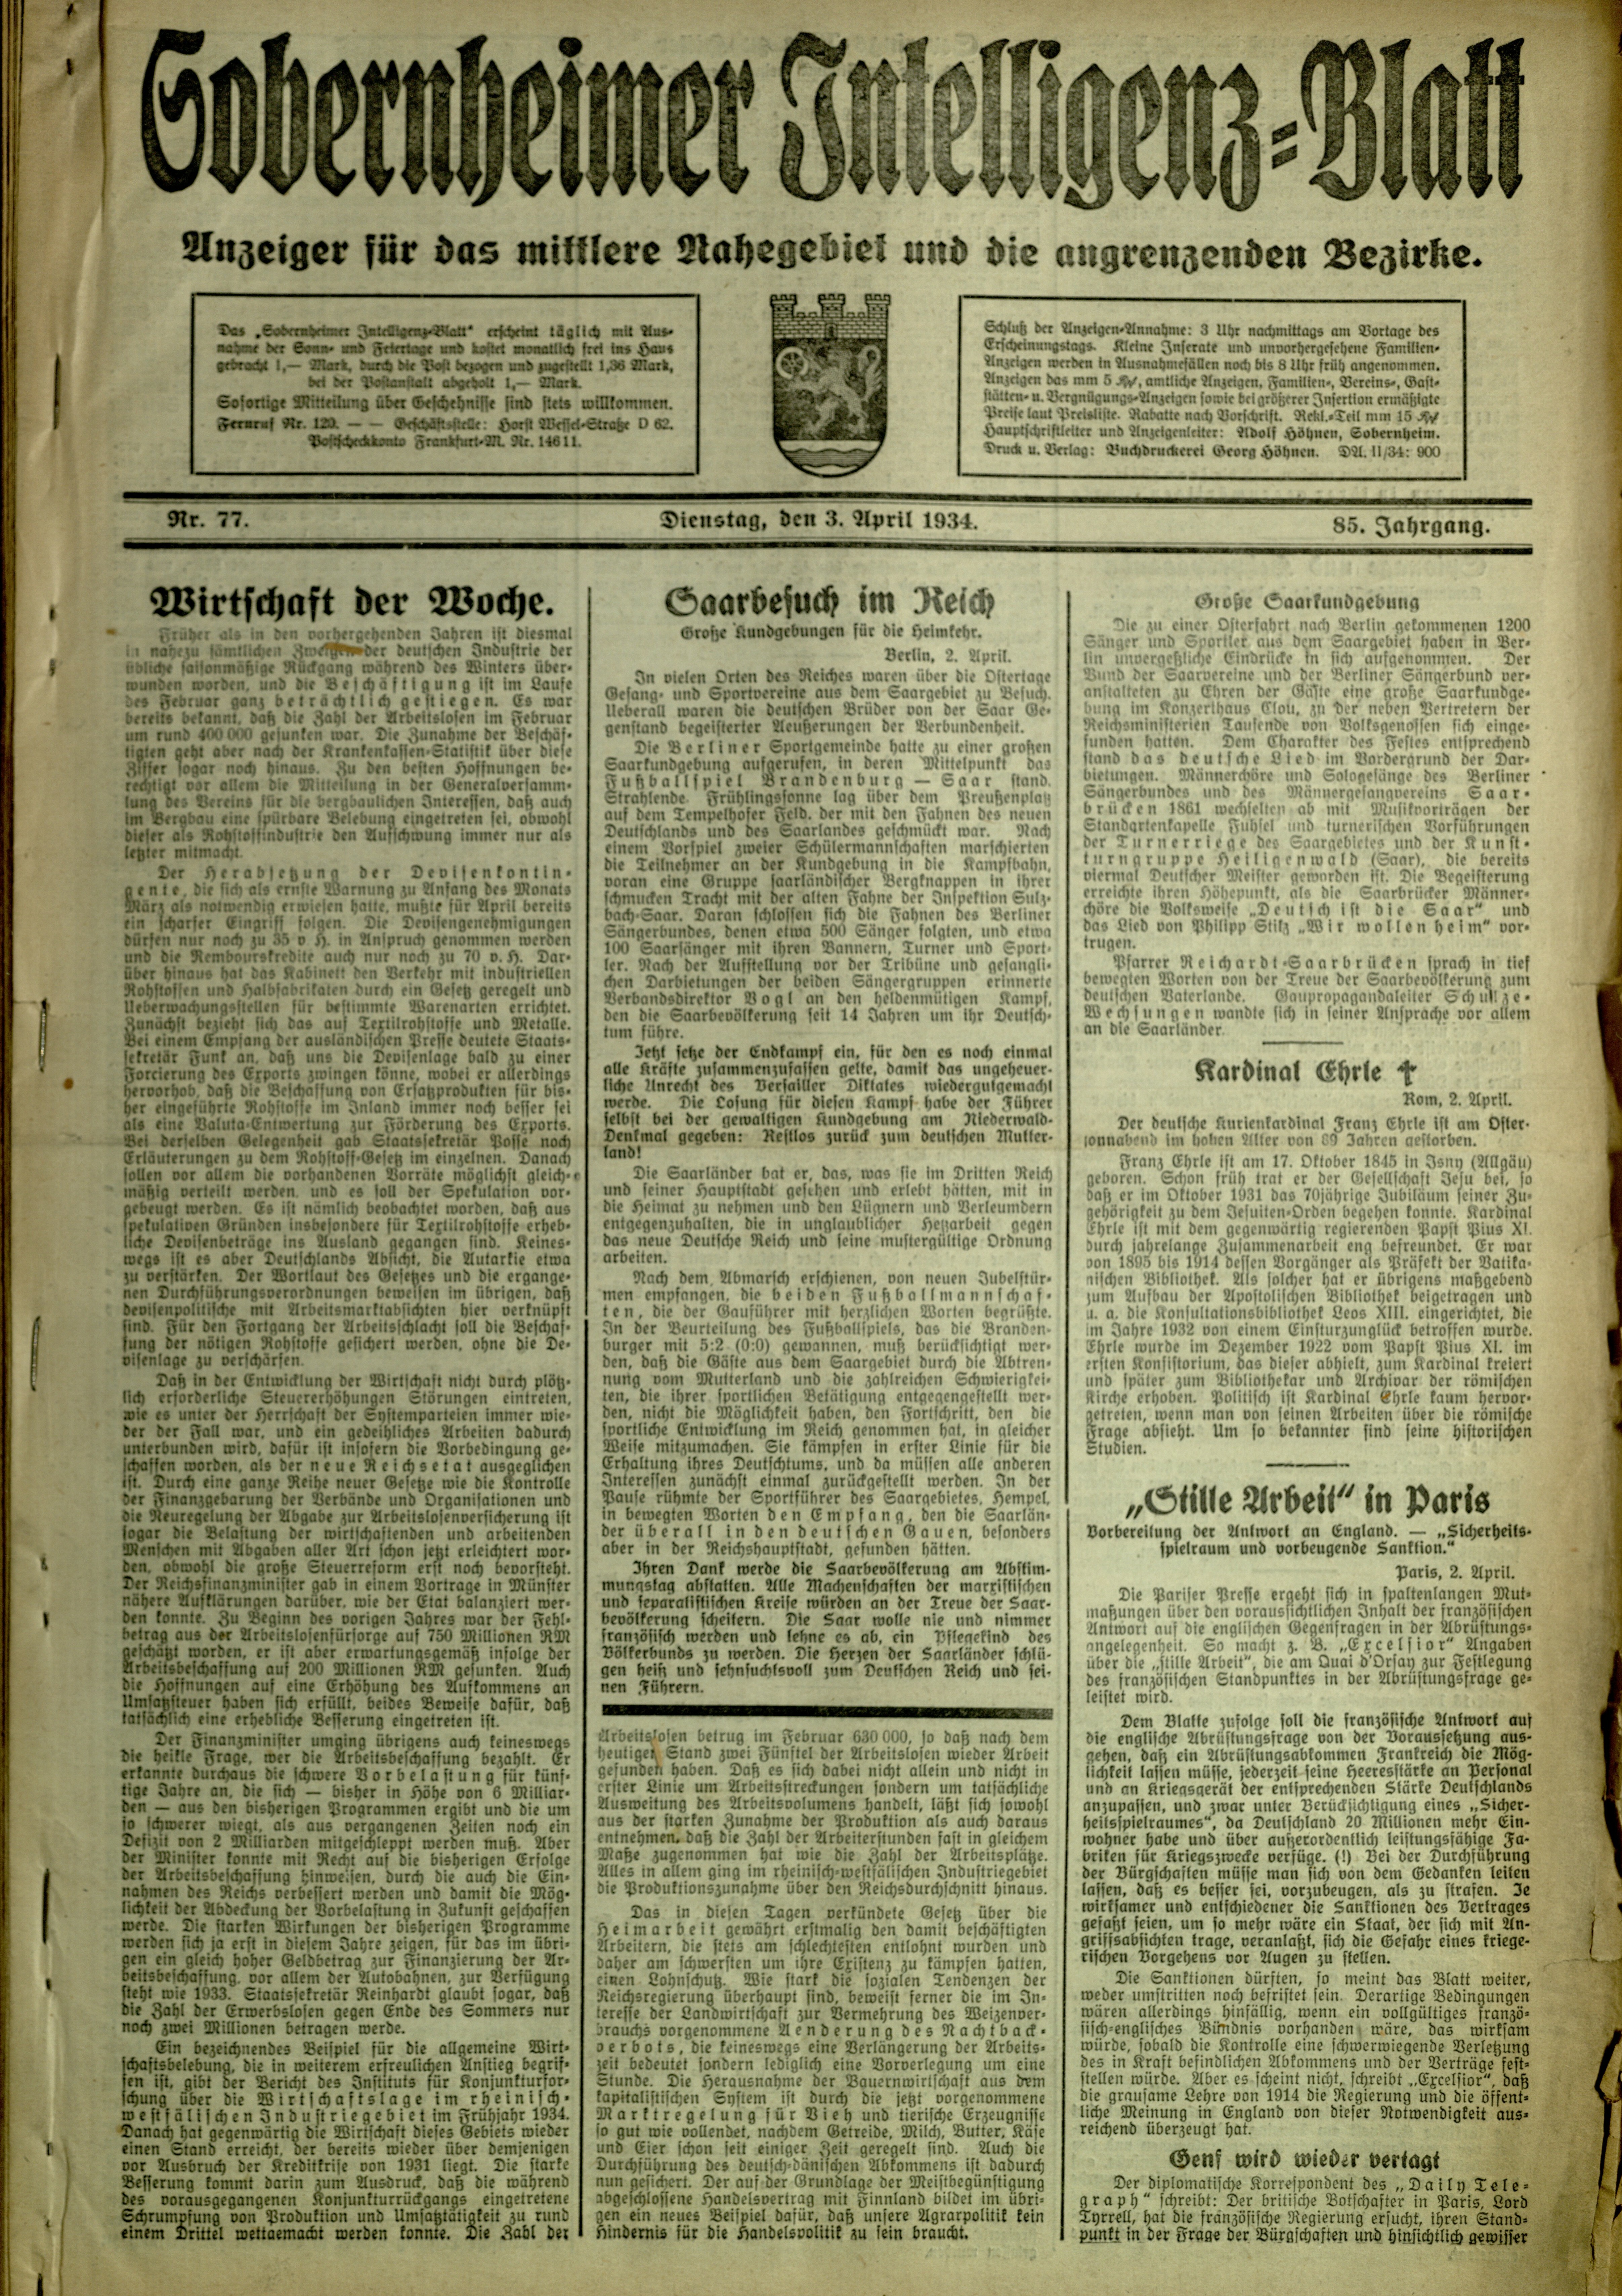 Zeitung: Sobernheimer Intelligenzblatt; April 1934, Jg. 85 Nr. 77 (Heimatmuseum Bad Sobernheim CC BY-NC-SA)